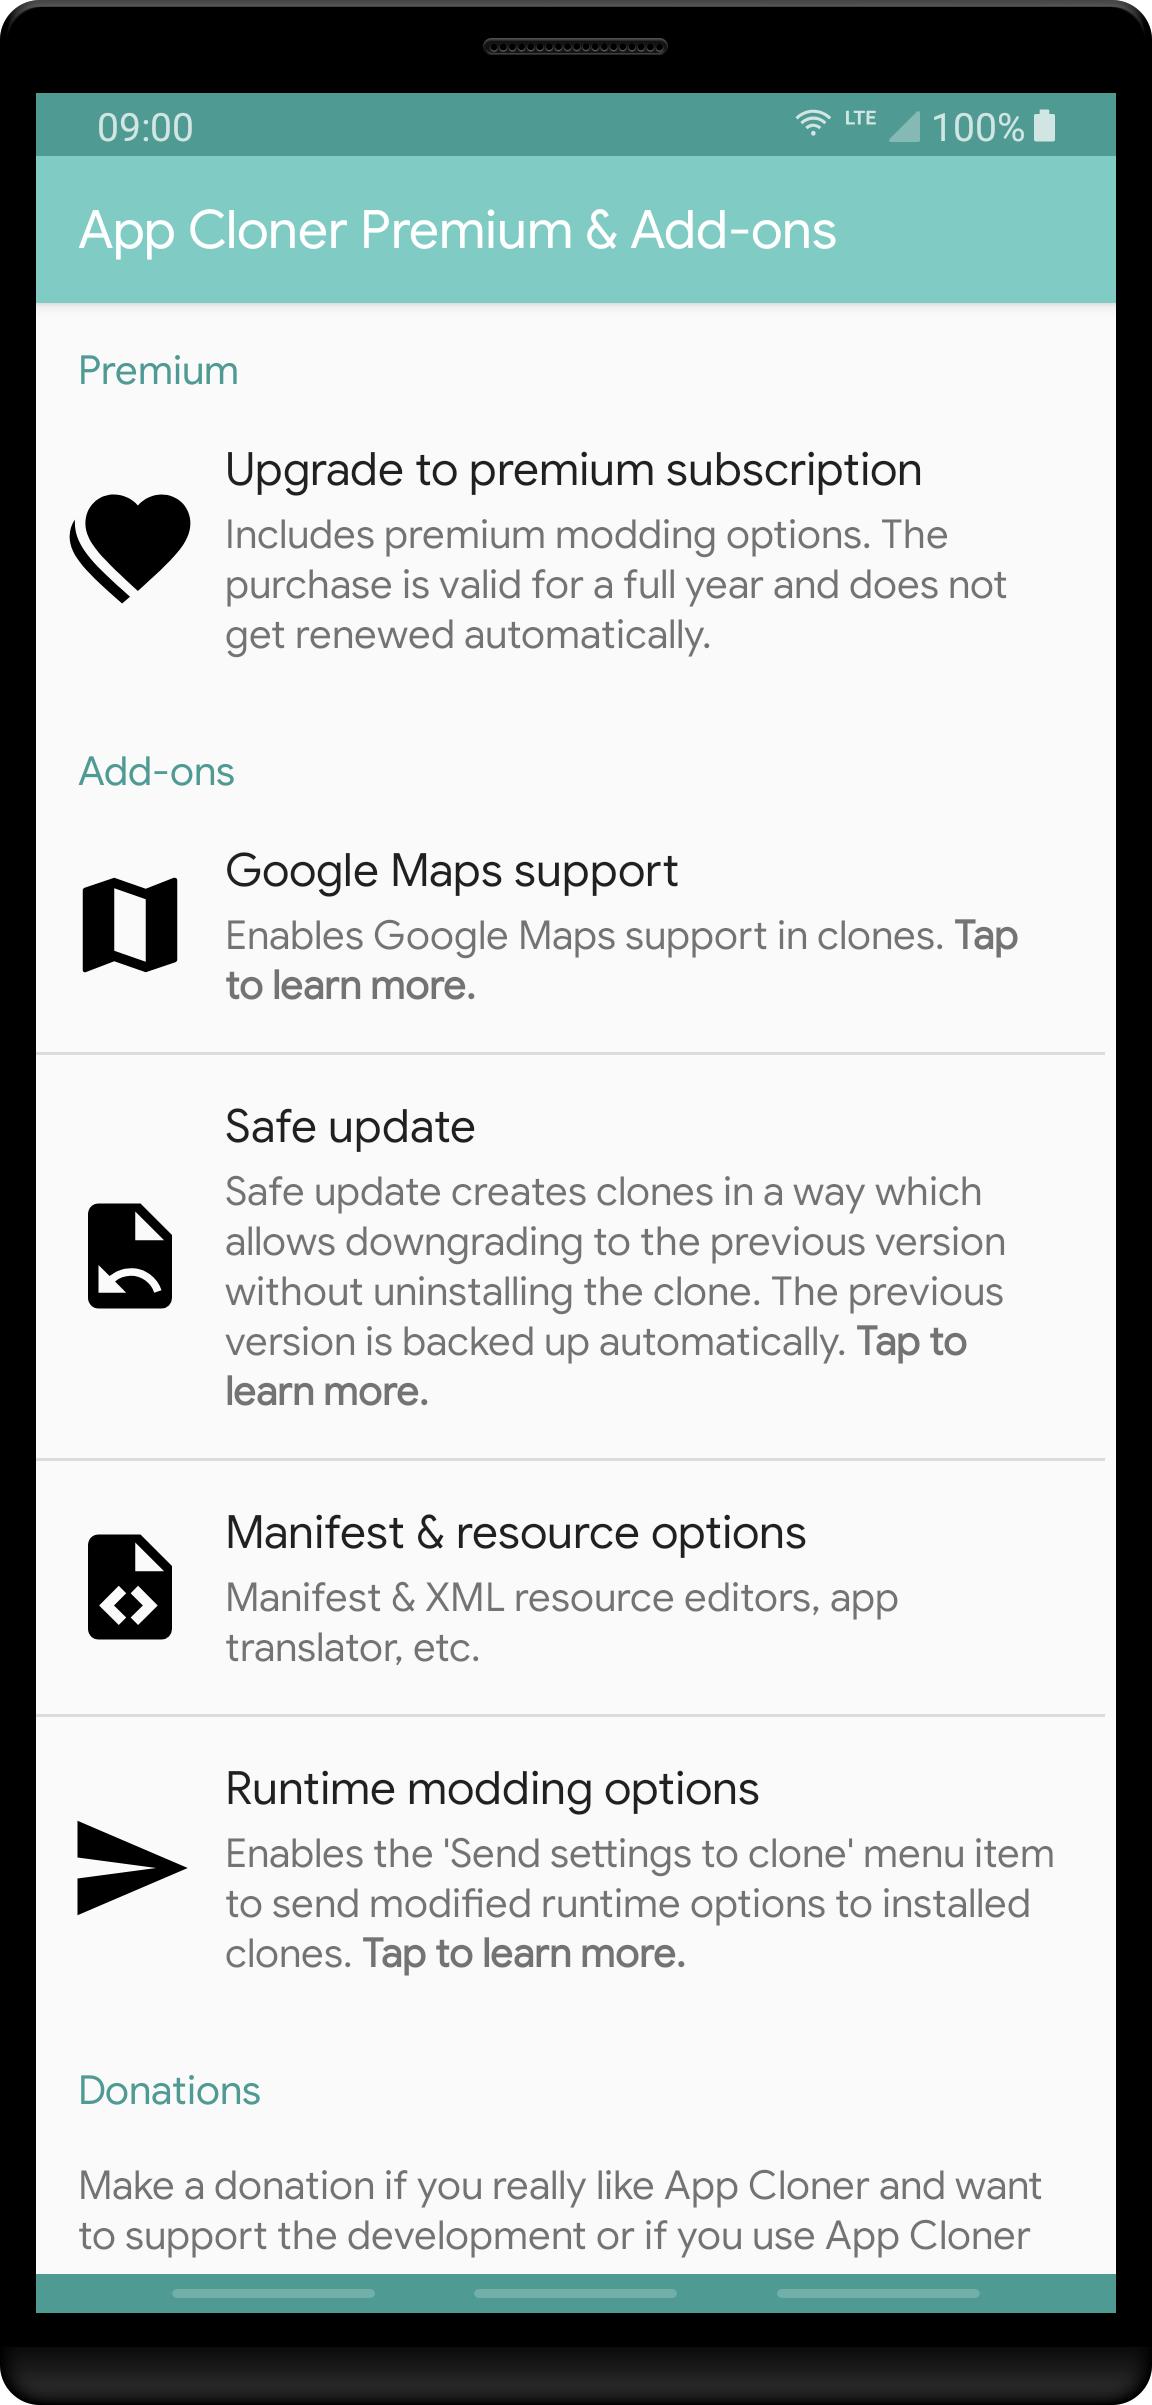 App Cloner Premium & Add-ons 2.8.1 Screenshot 1